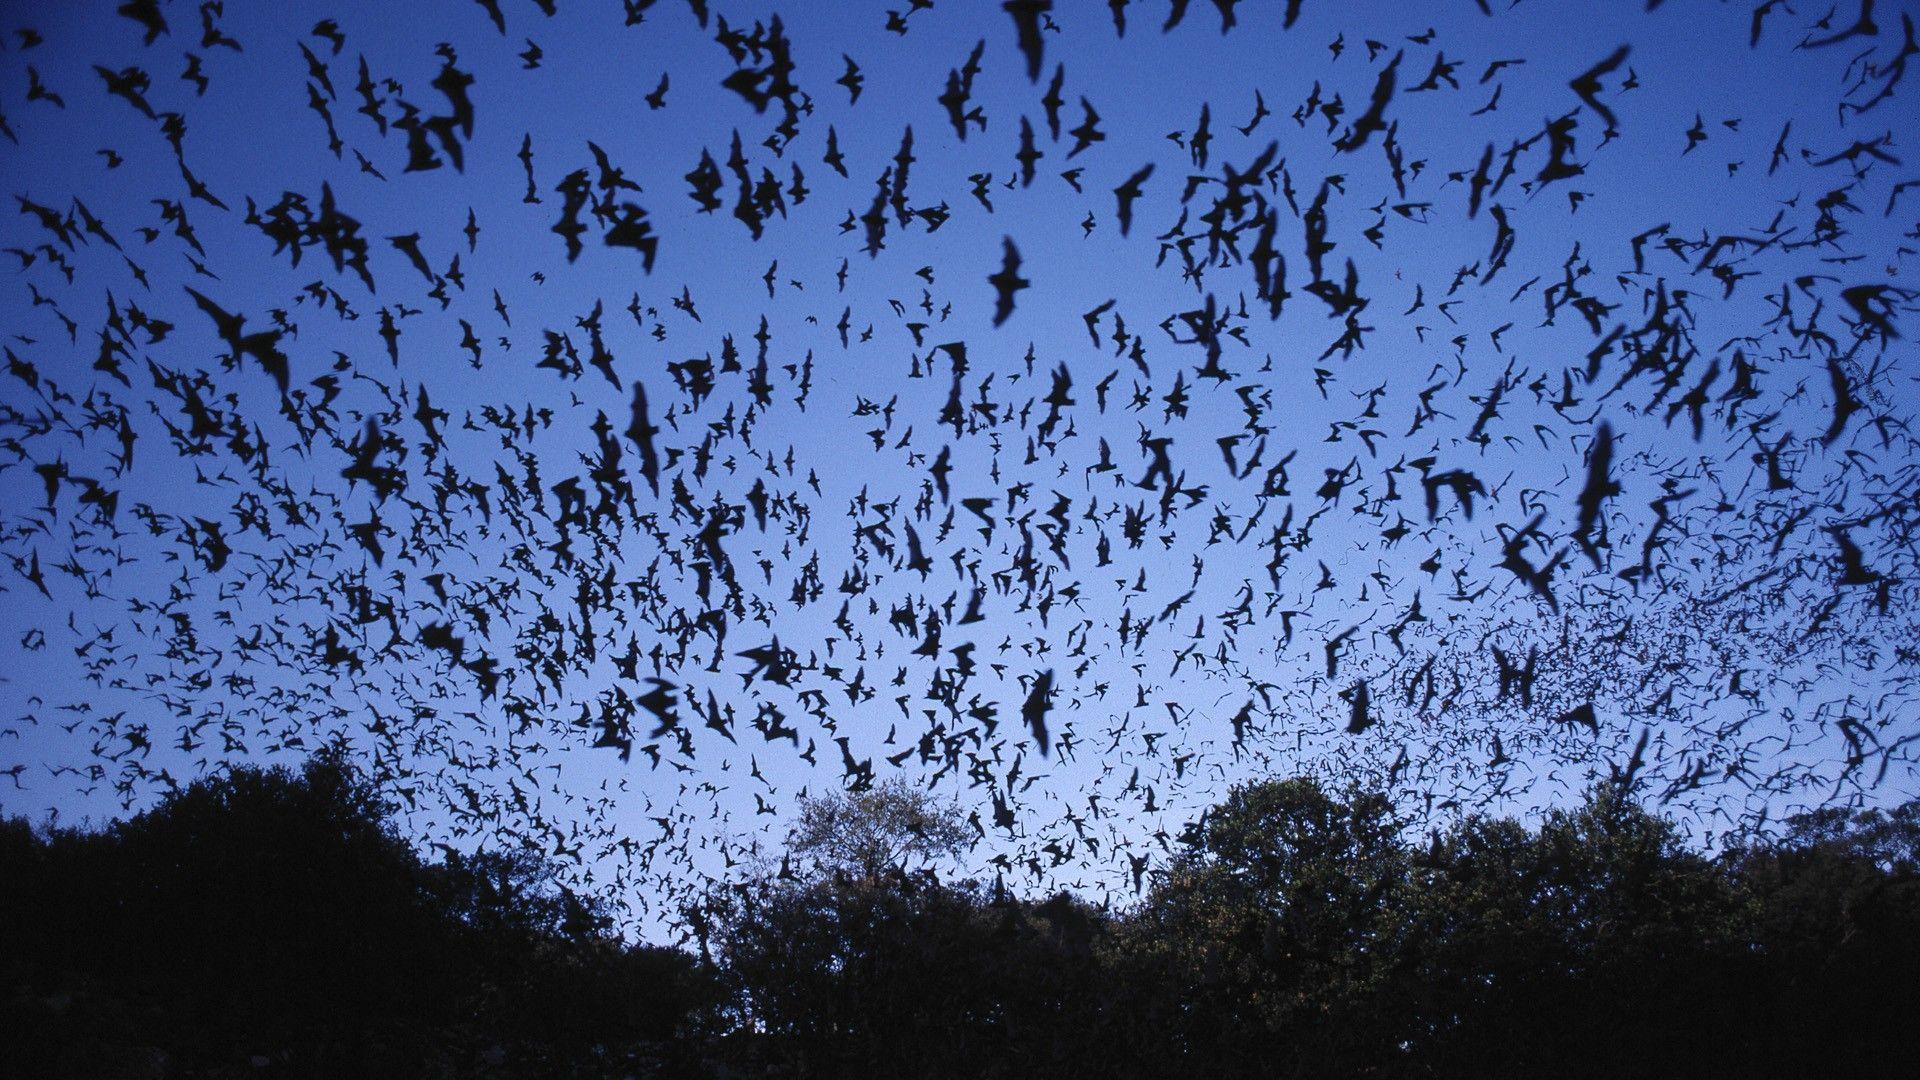 bats wallpaper